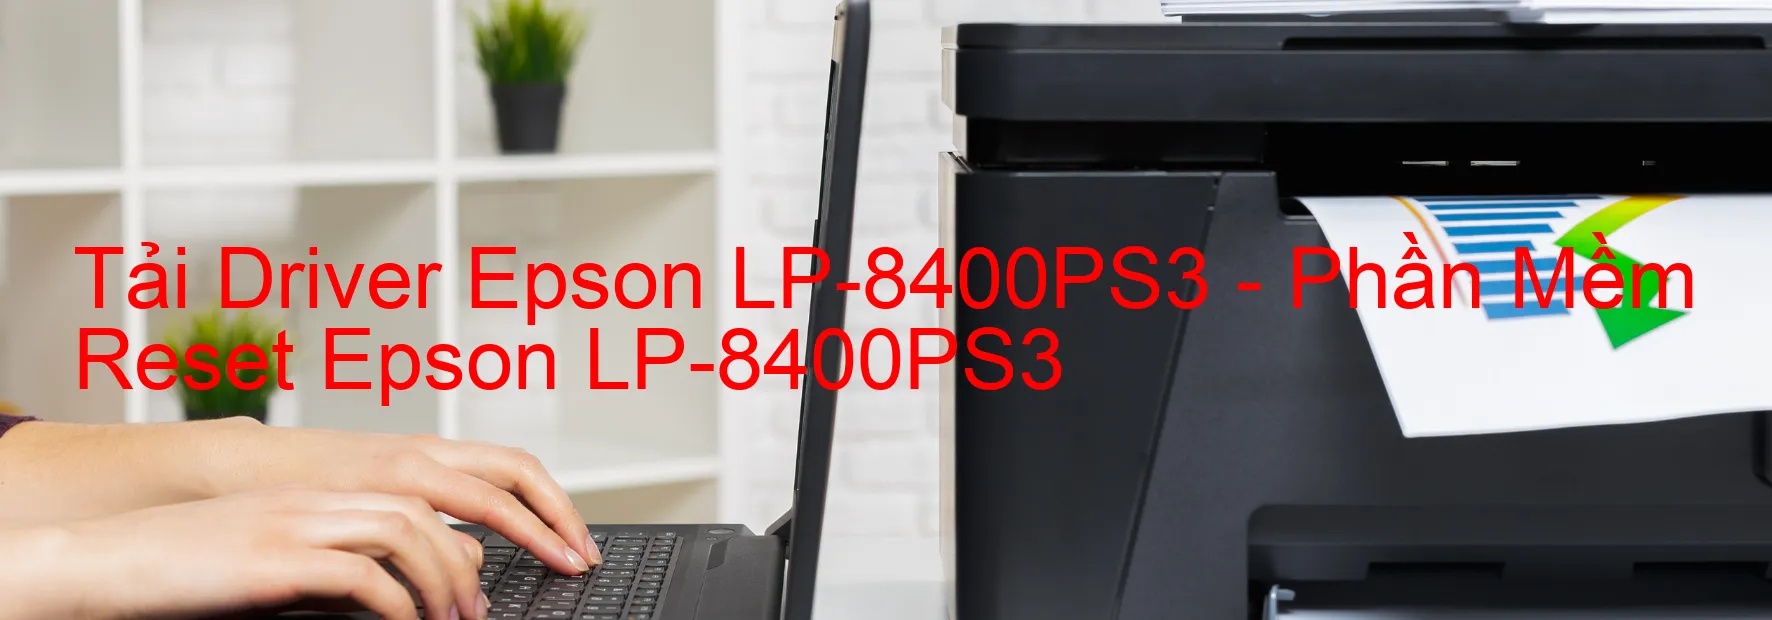 Driver Epson LP-8400PS3, Phần Mềm Reset Epson LP-8400PS3